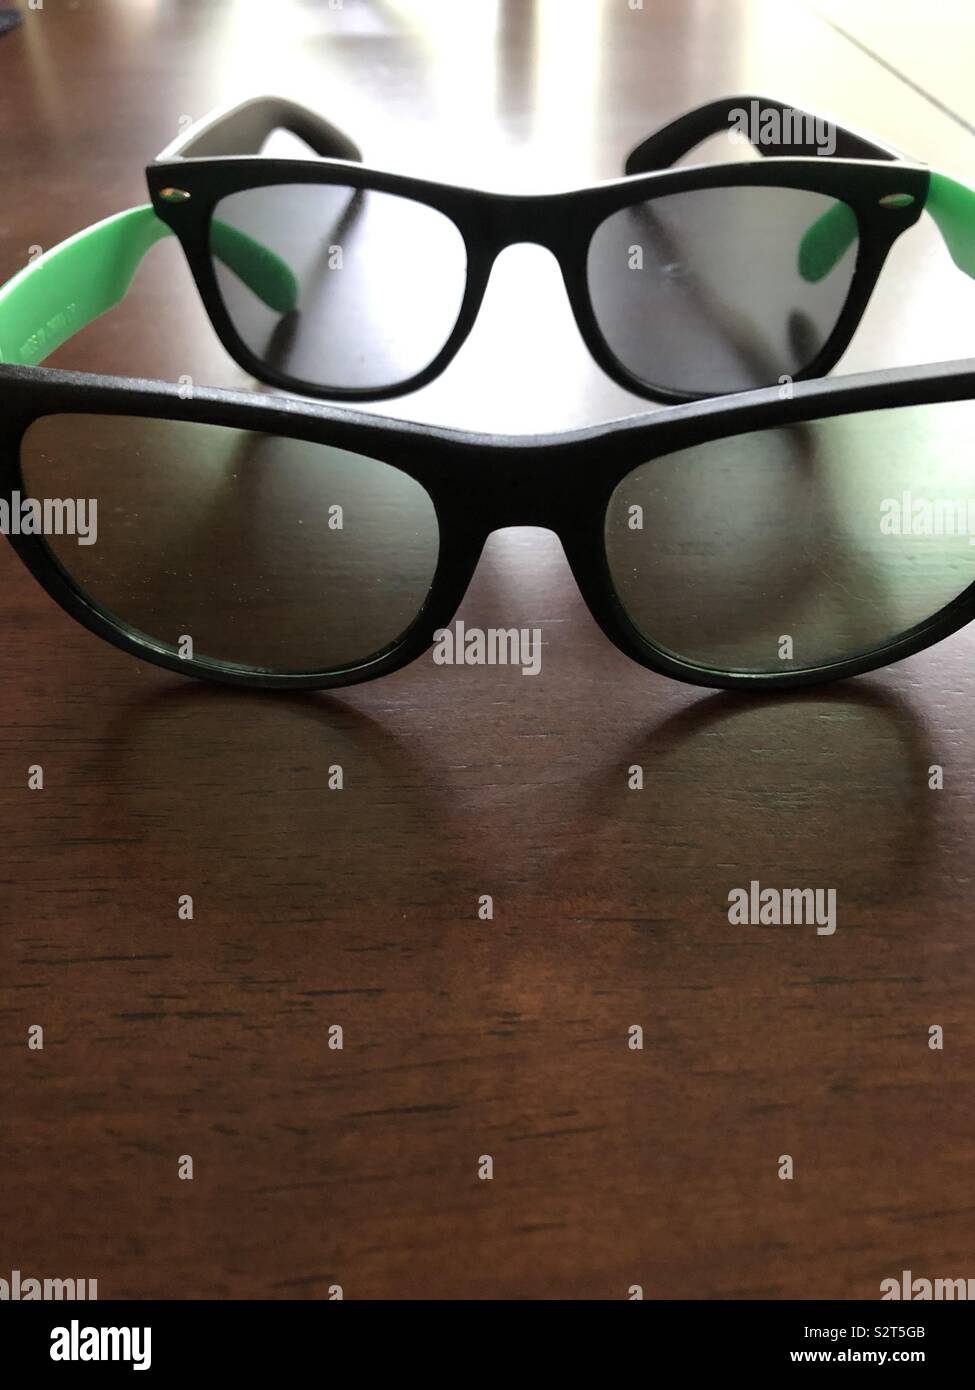 Green lenses/ Gray lenses/ sun glasses Stock Photo